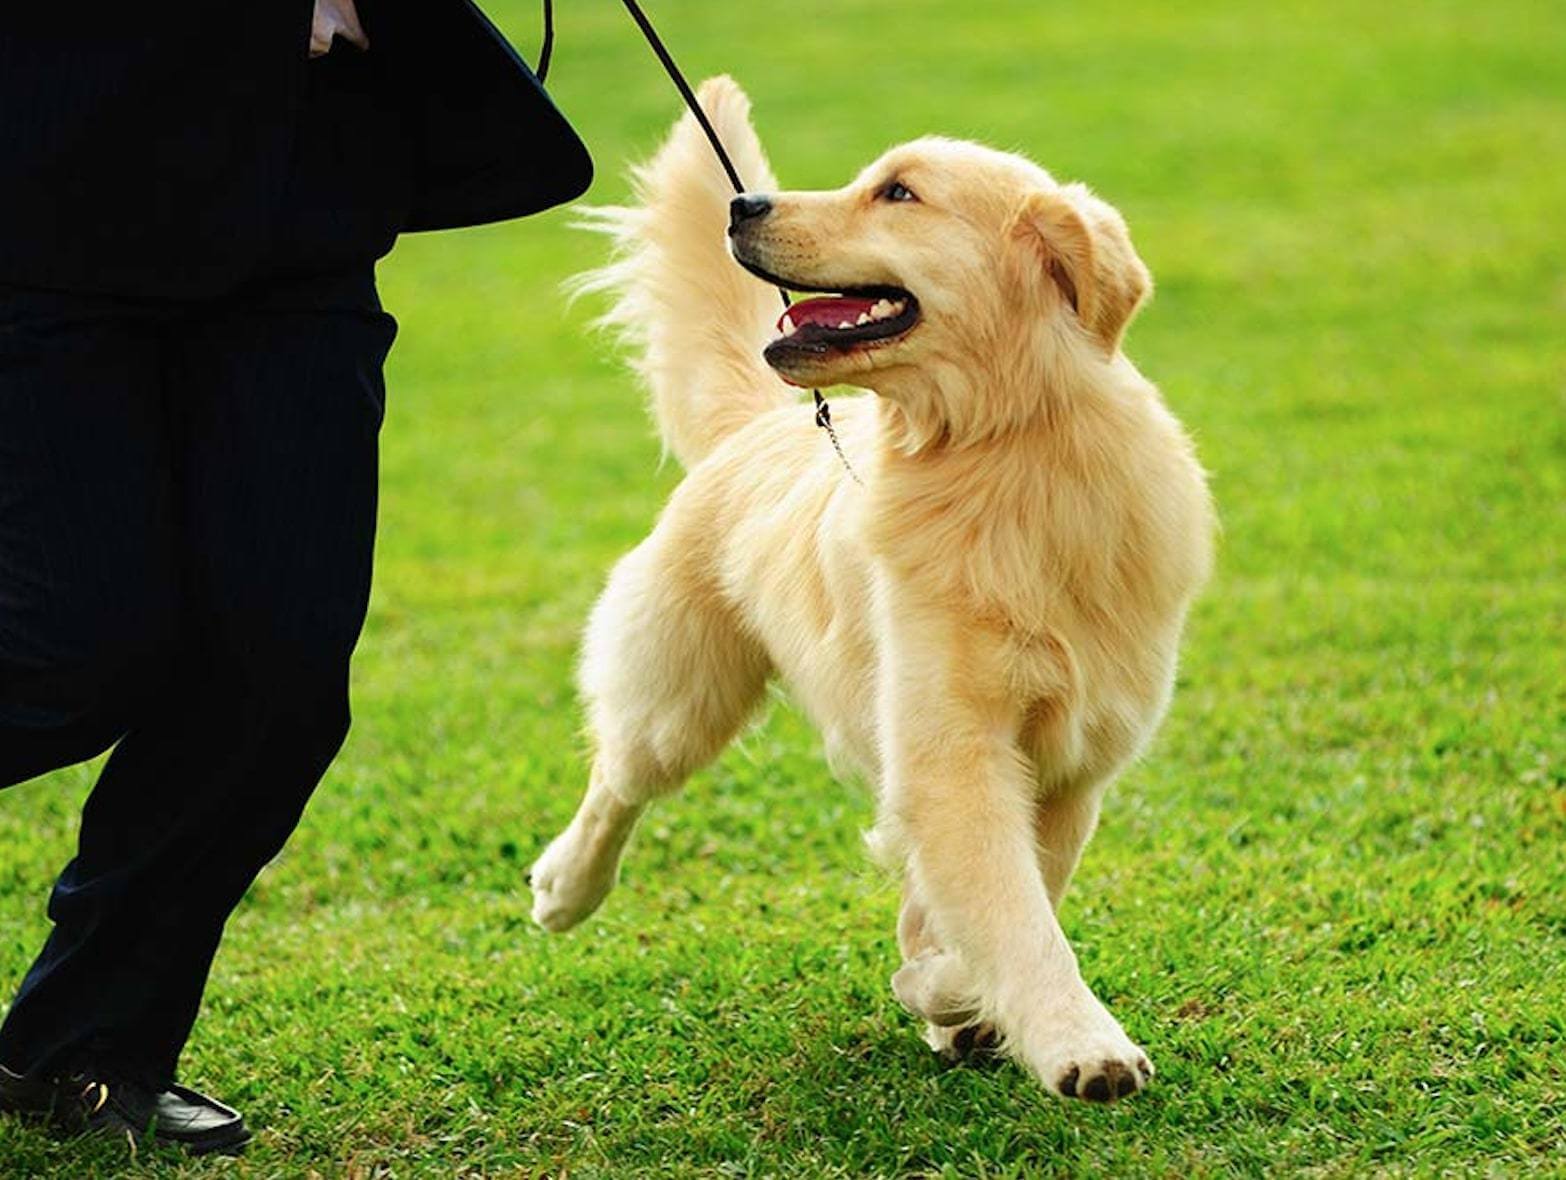 addestrare un cane addestramento cani golden retriever che cammina con il guinzaglio cu un prato verde con il padrone